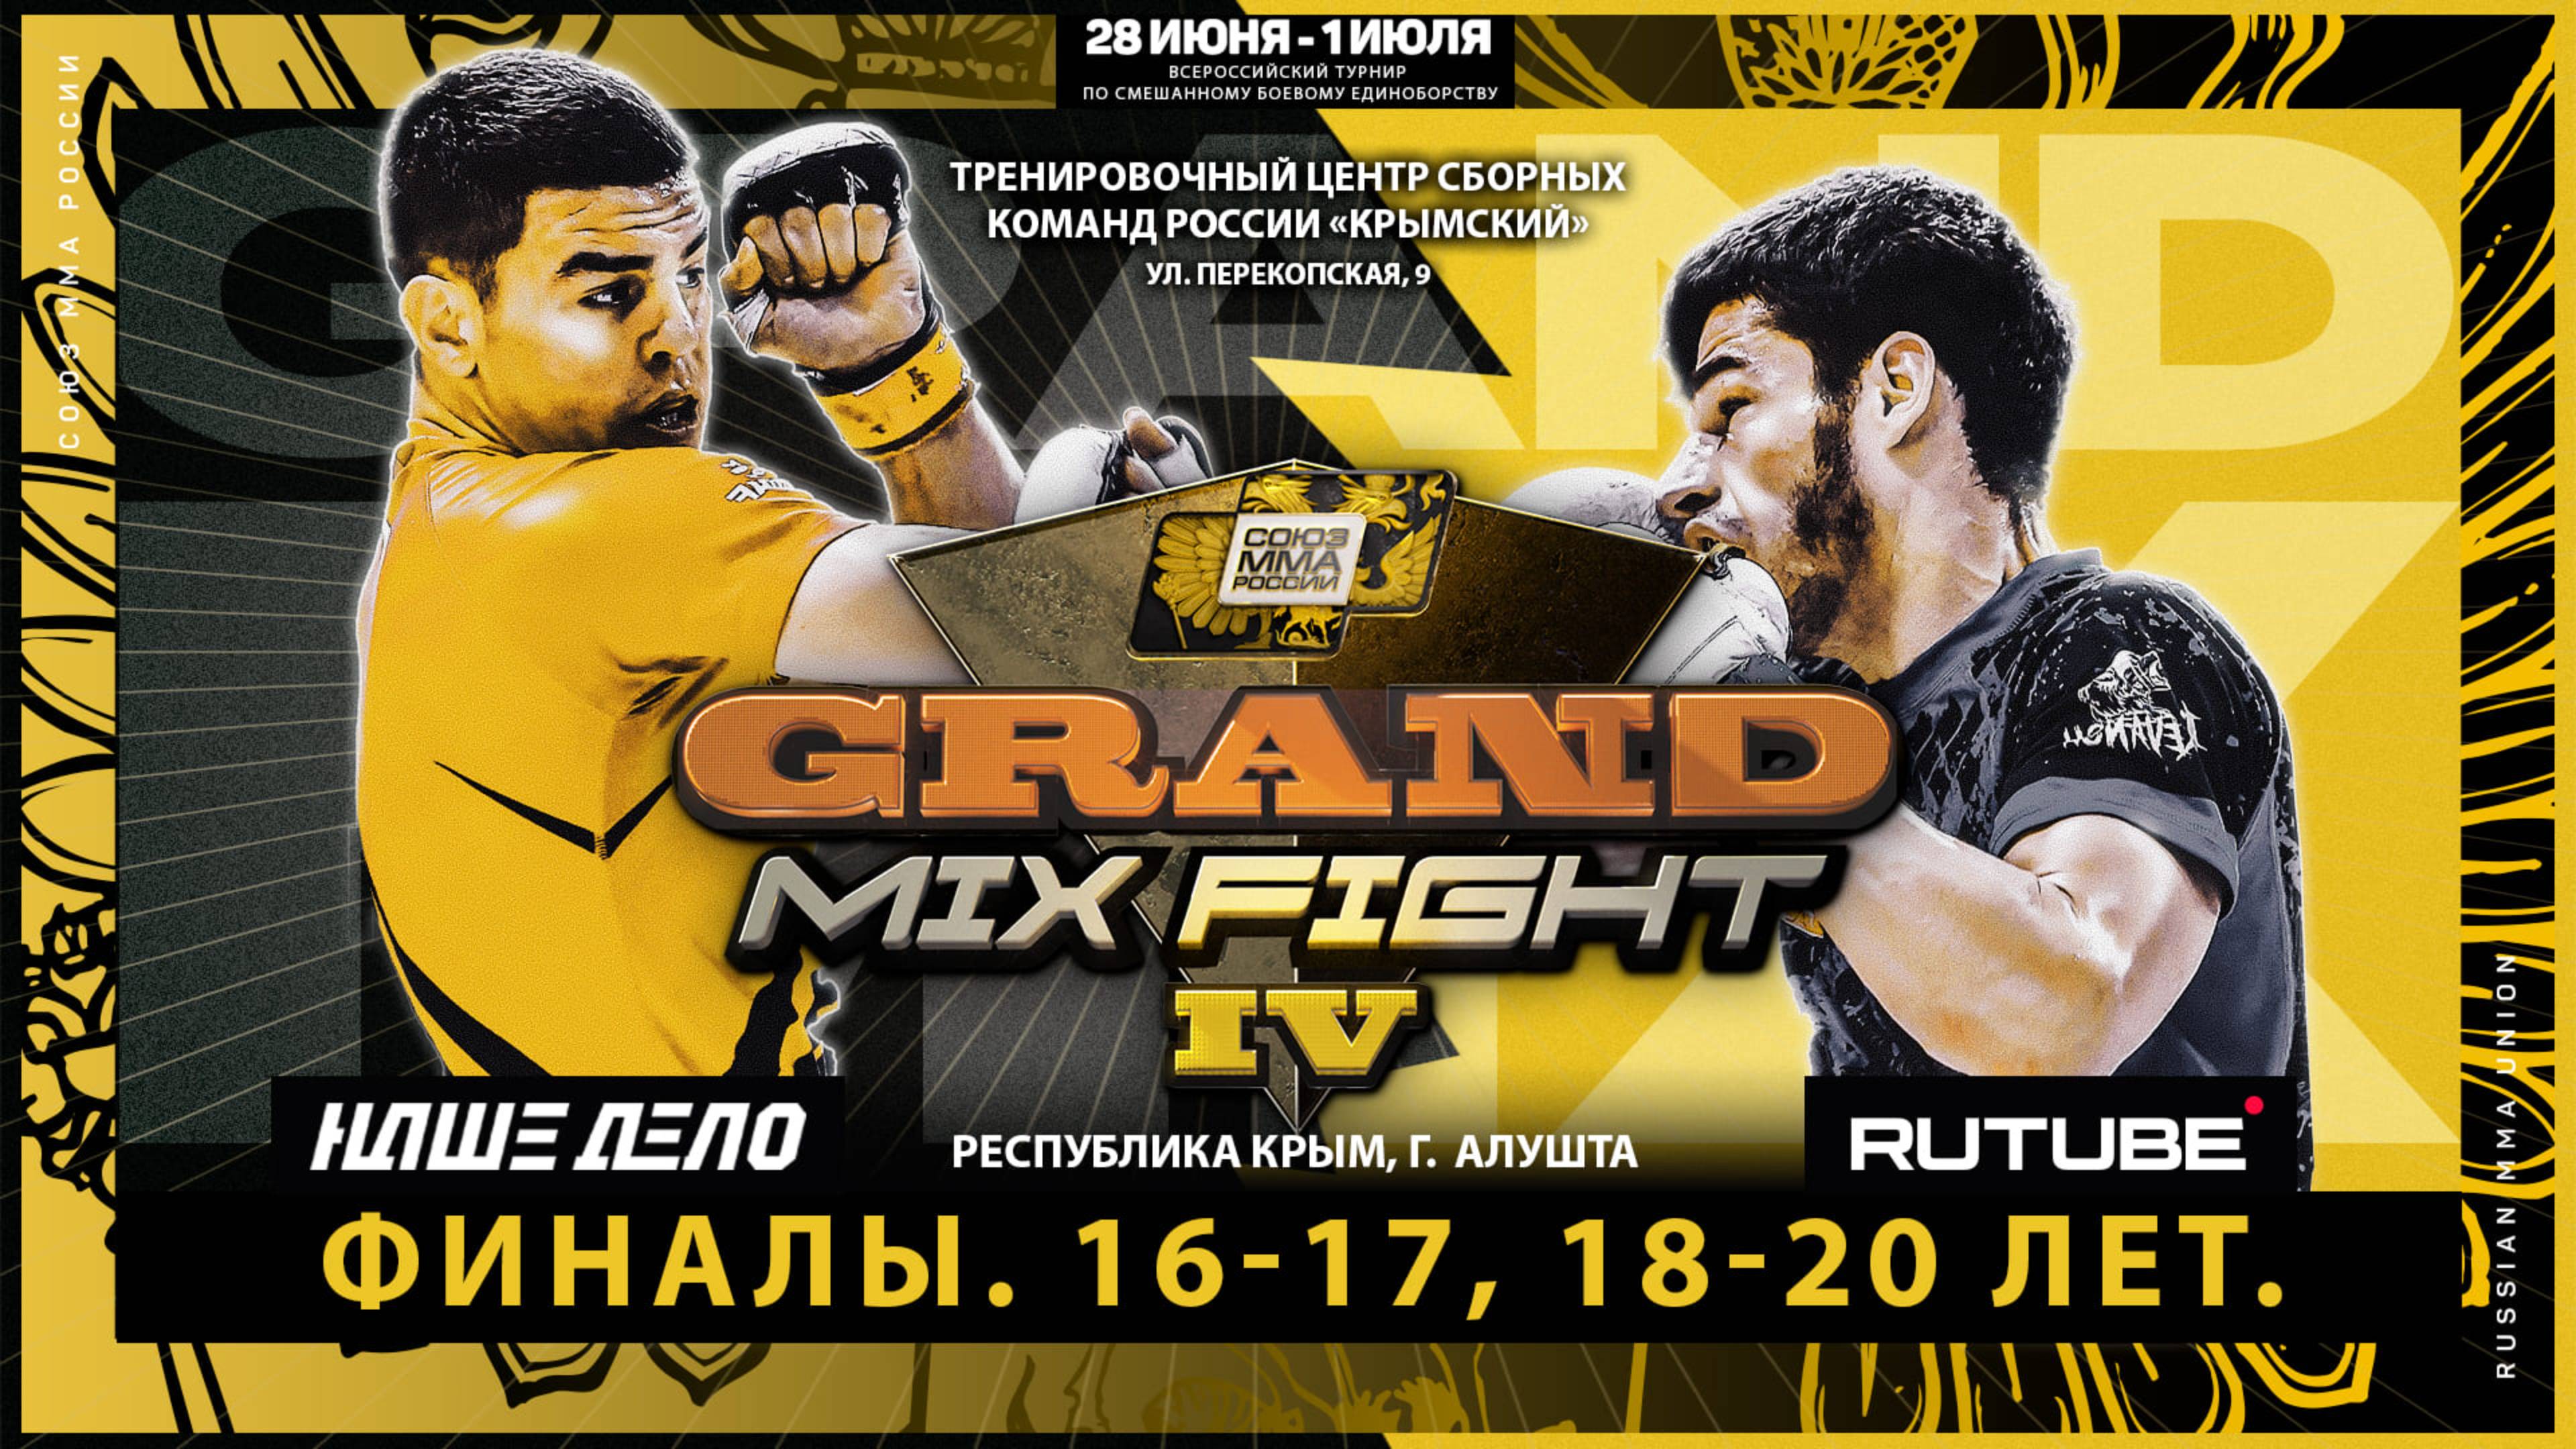 Всероссийский турнир по смешанному боевому единоборству Grand Mix Fight IV. Финалы. 16-17, 18-20 лет